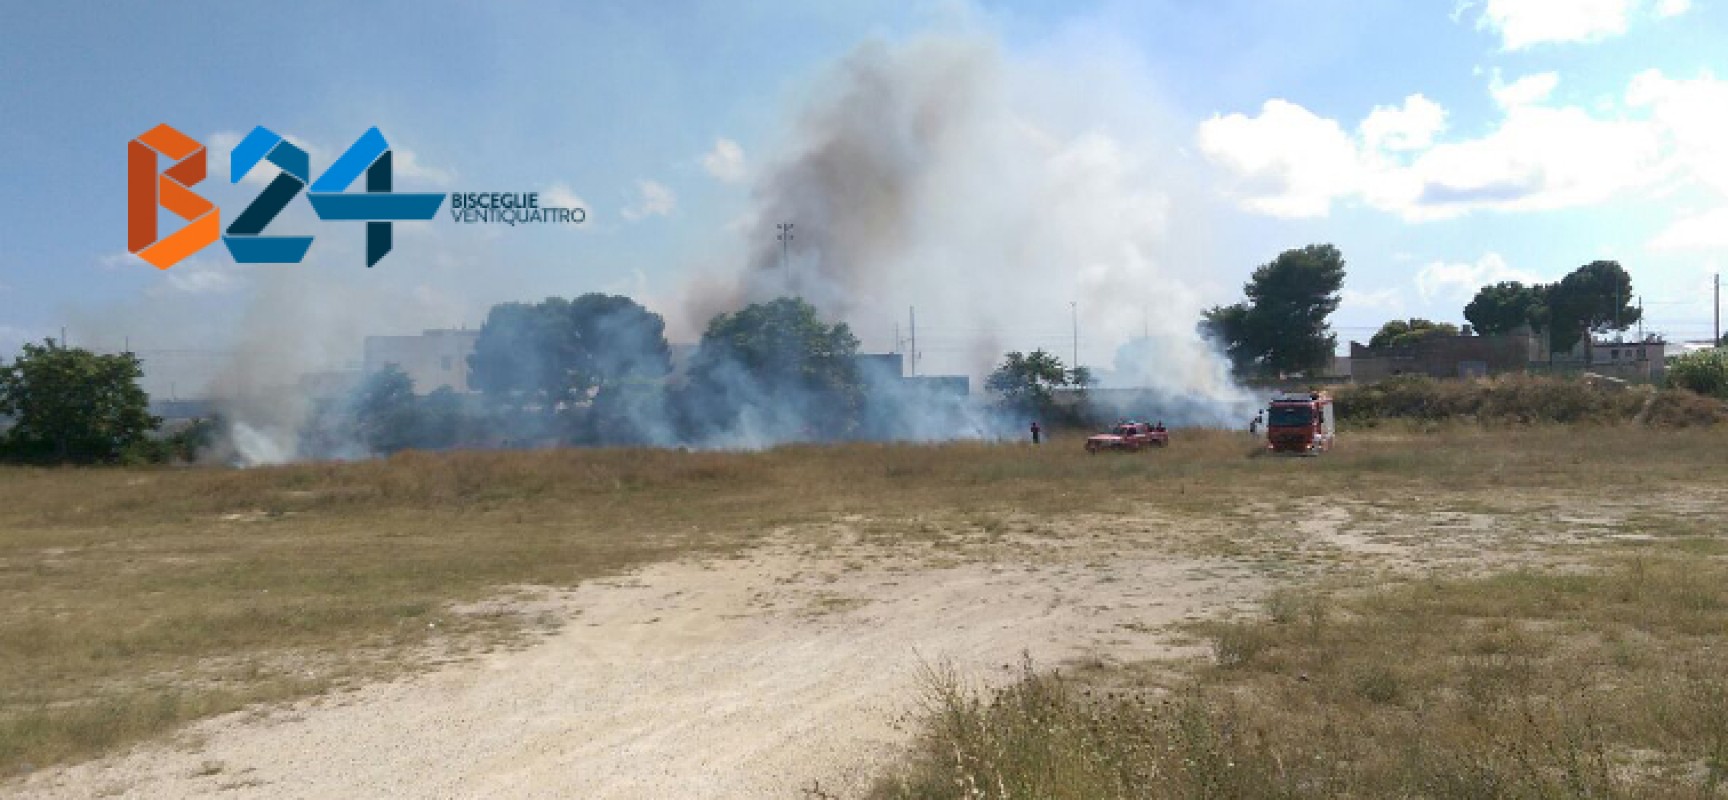 Incendio in zona san Martino insidia binari ferroviari / FOTO